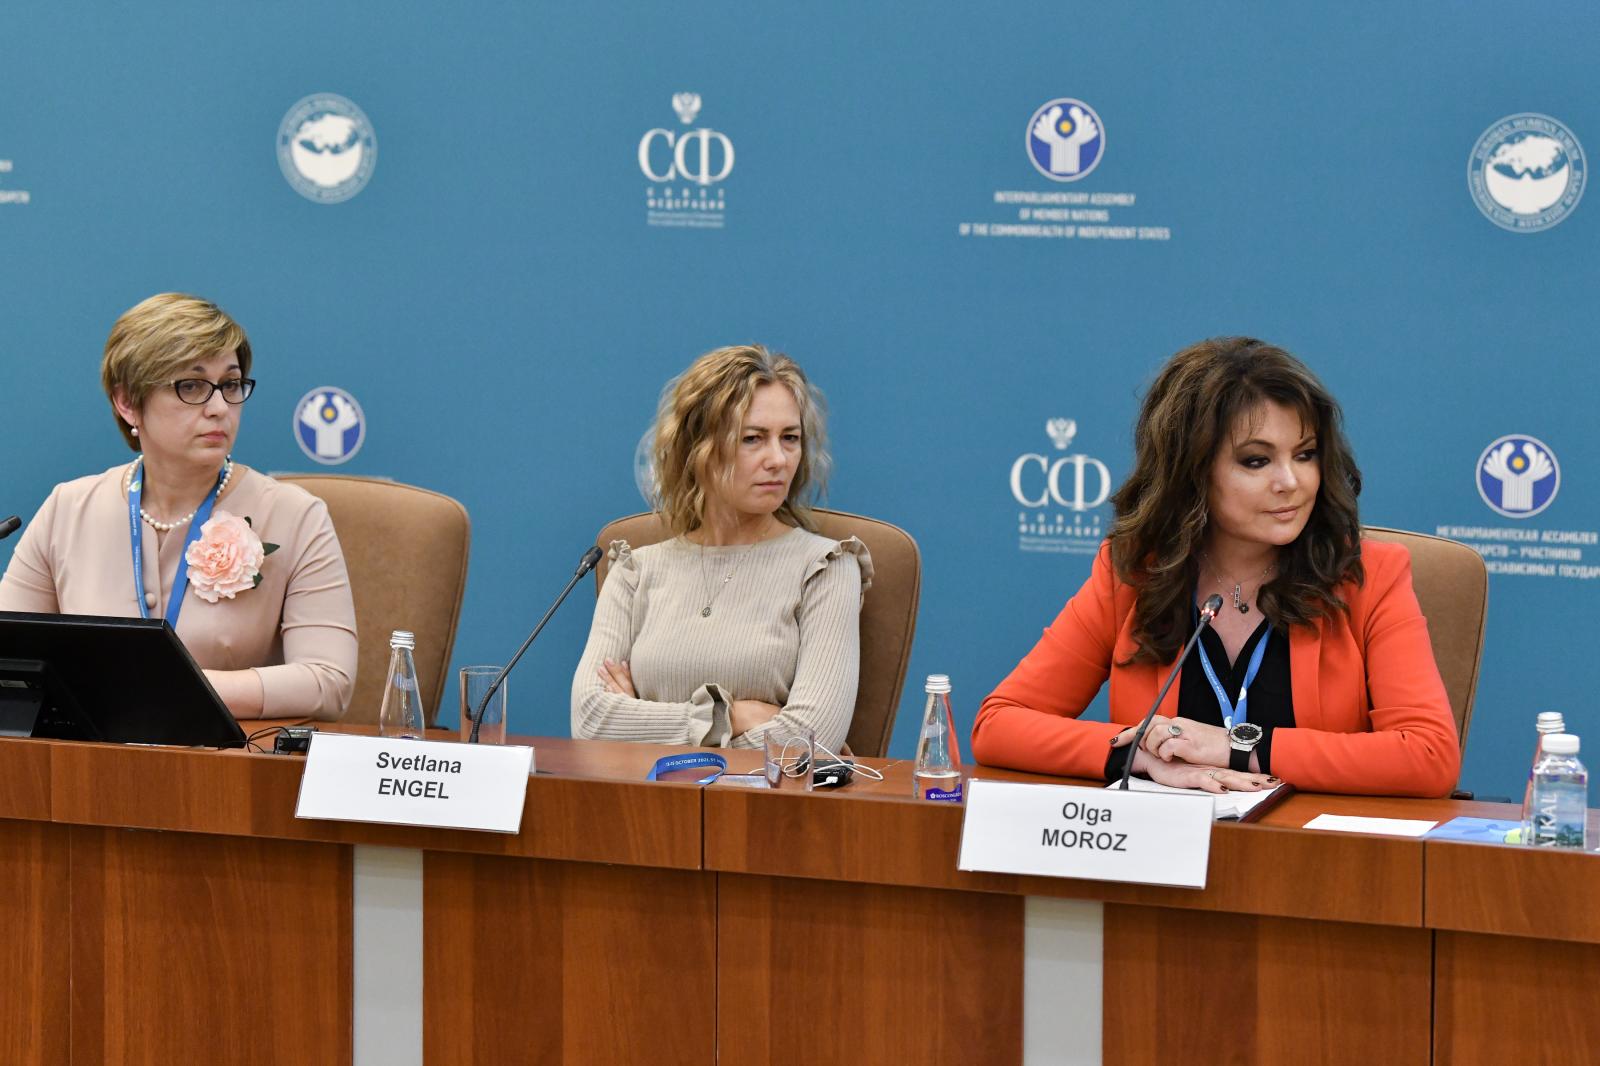 М.Ю.Милованова выступила на сессии "Социальное предпринимательство и женщины" третьего Евразийского женского форума по теме "Трудовые ресурсы сельских территорий и социальное предпринимательство: гендерные аспекты".